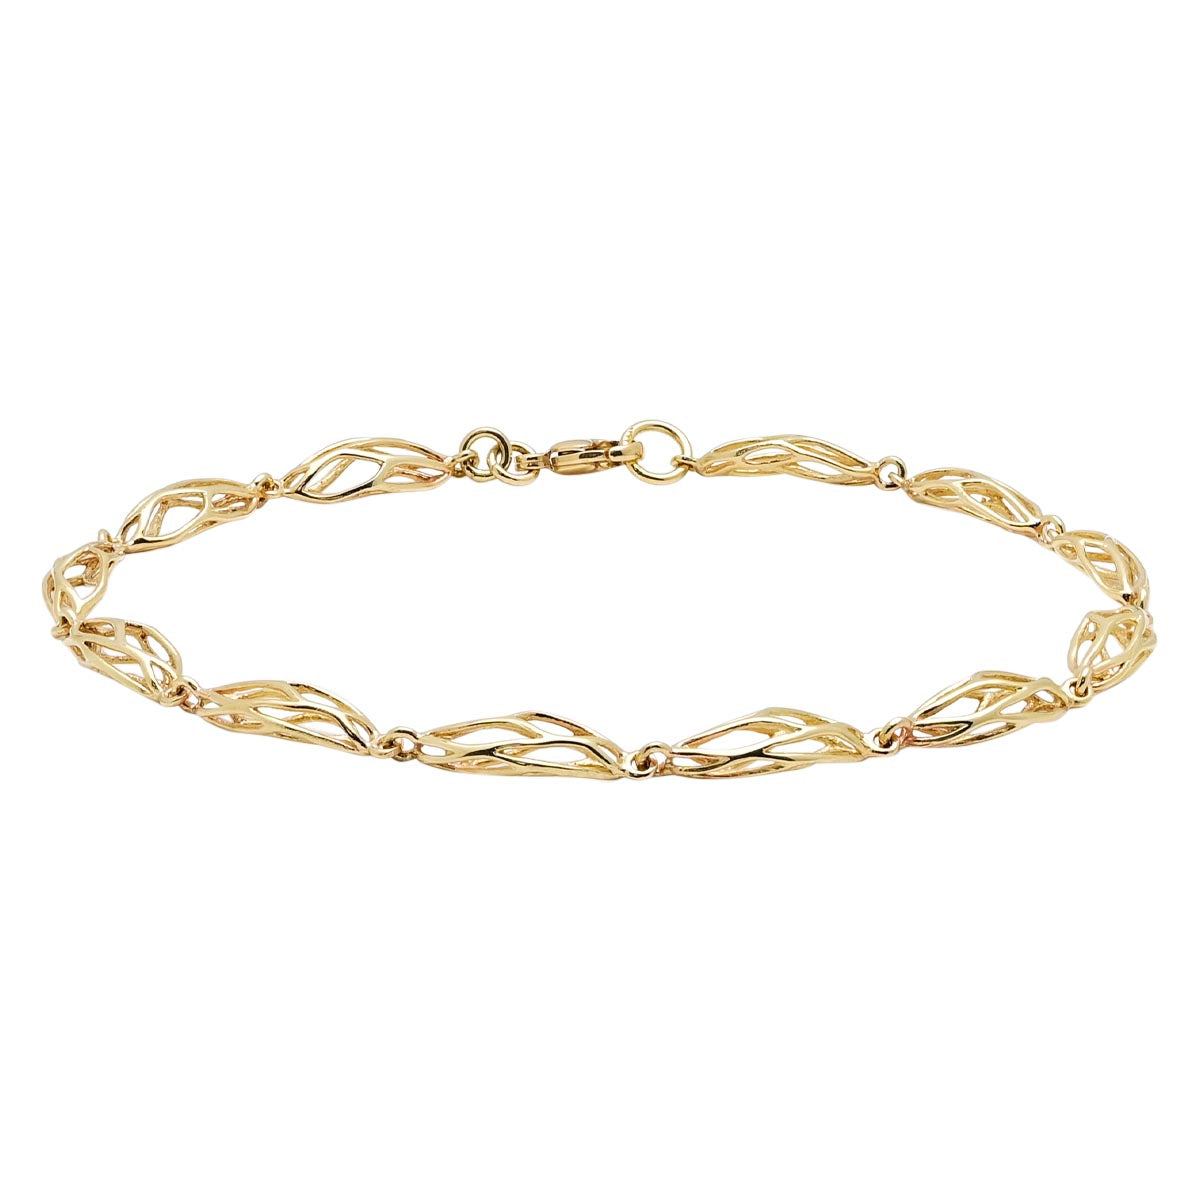 Weave Link Bracelet in 14kt Yellow Gold